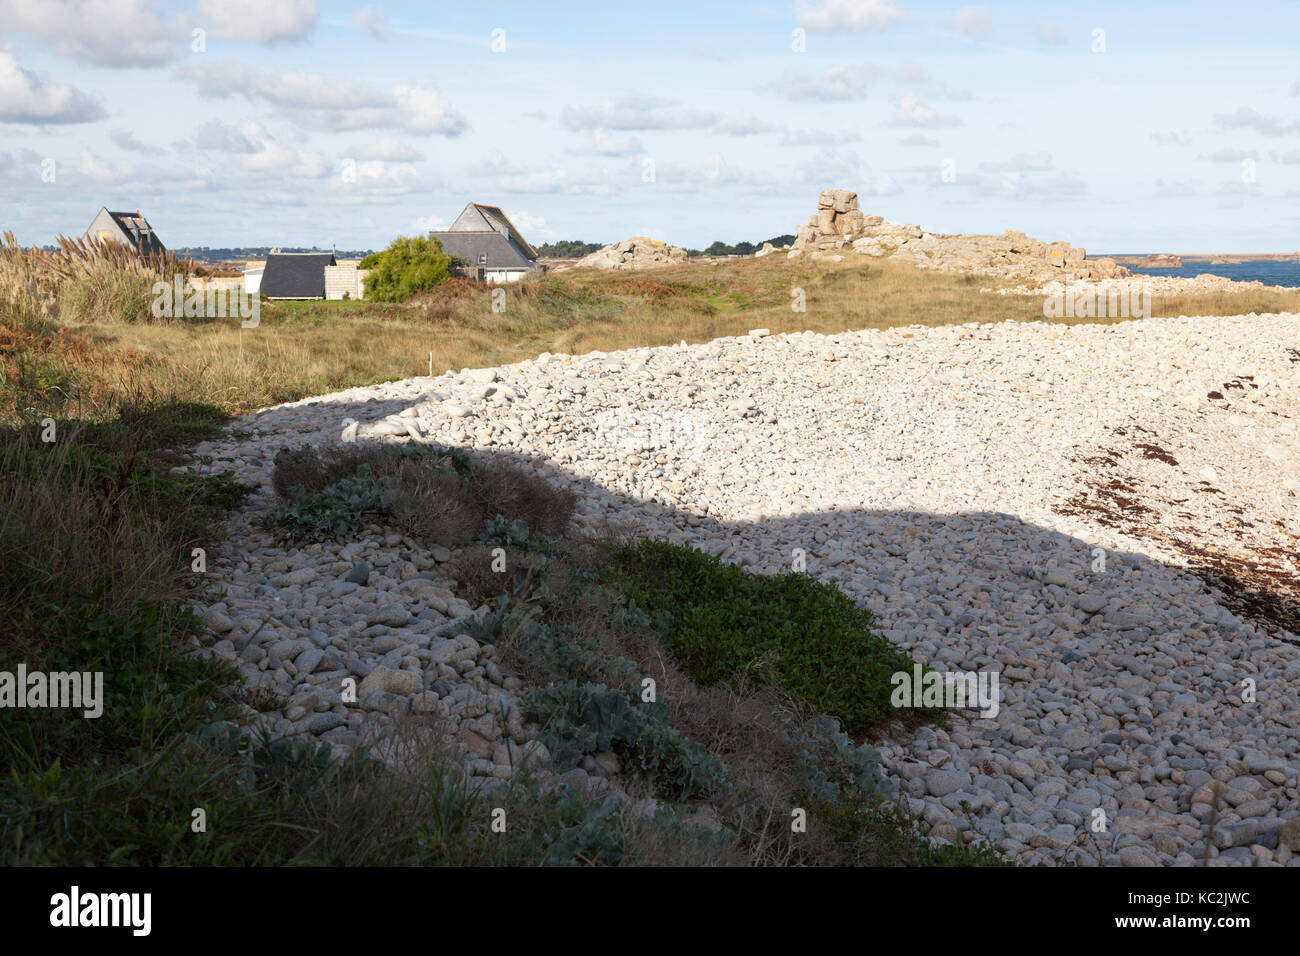 Formant un mur de deux mètres d'eau de mer, un tas de cailloux, créé par des tempêtes sur la côte nord-ouest de l'île de Bréhat (Bretagne - France). Banque D'Images